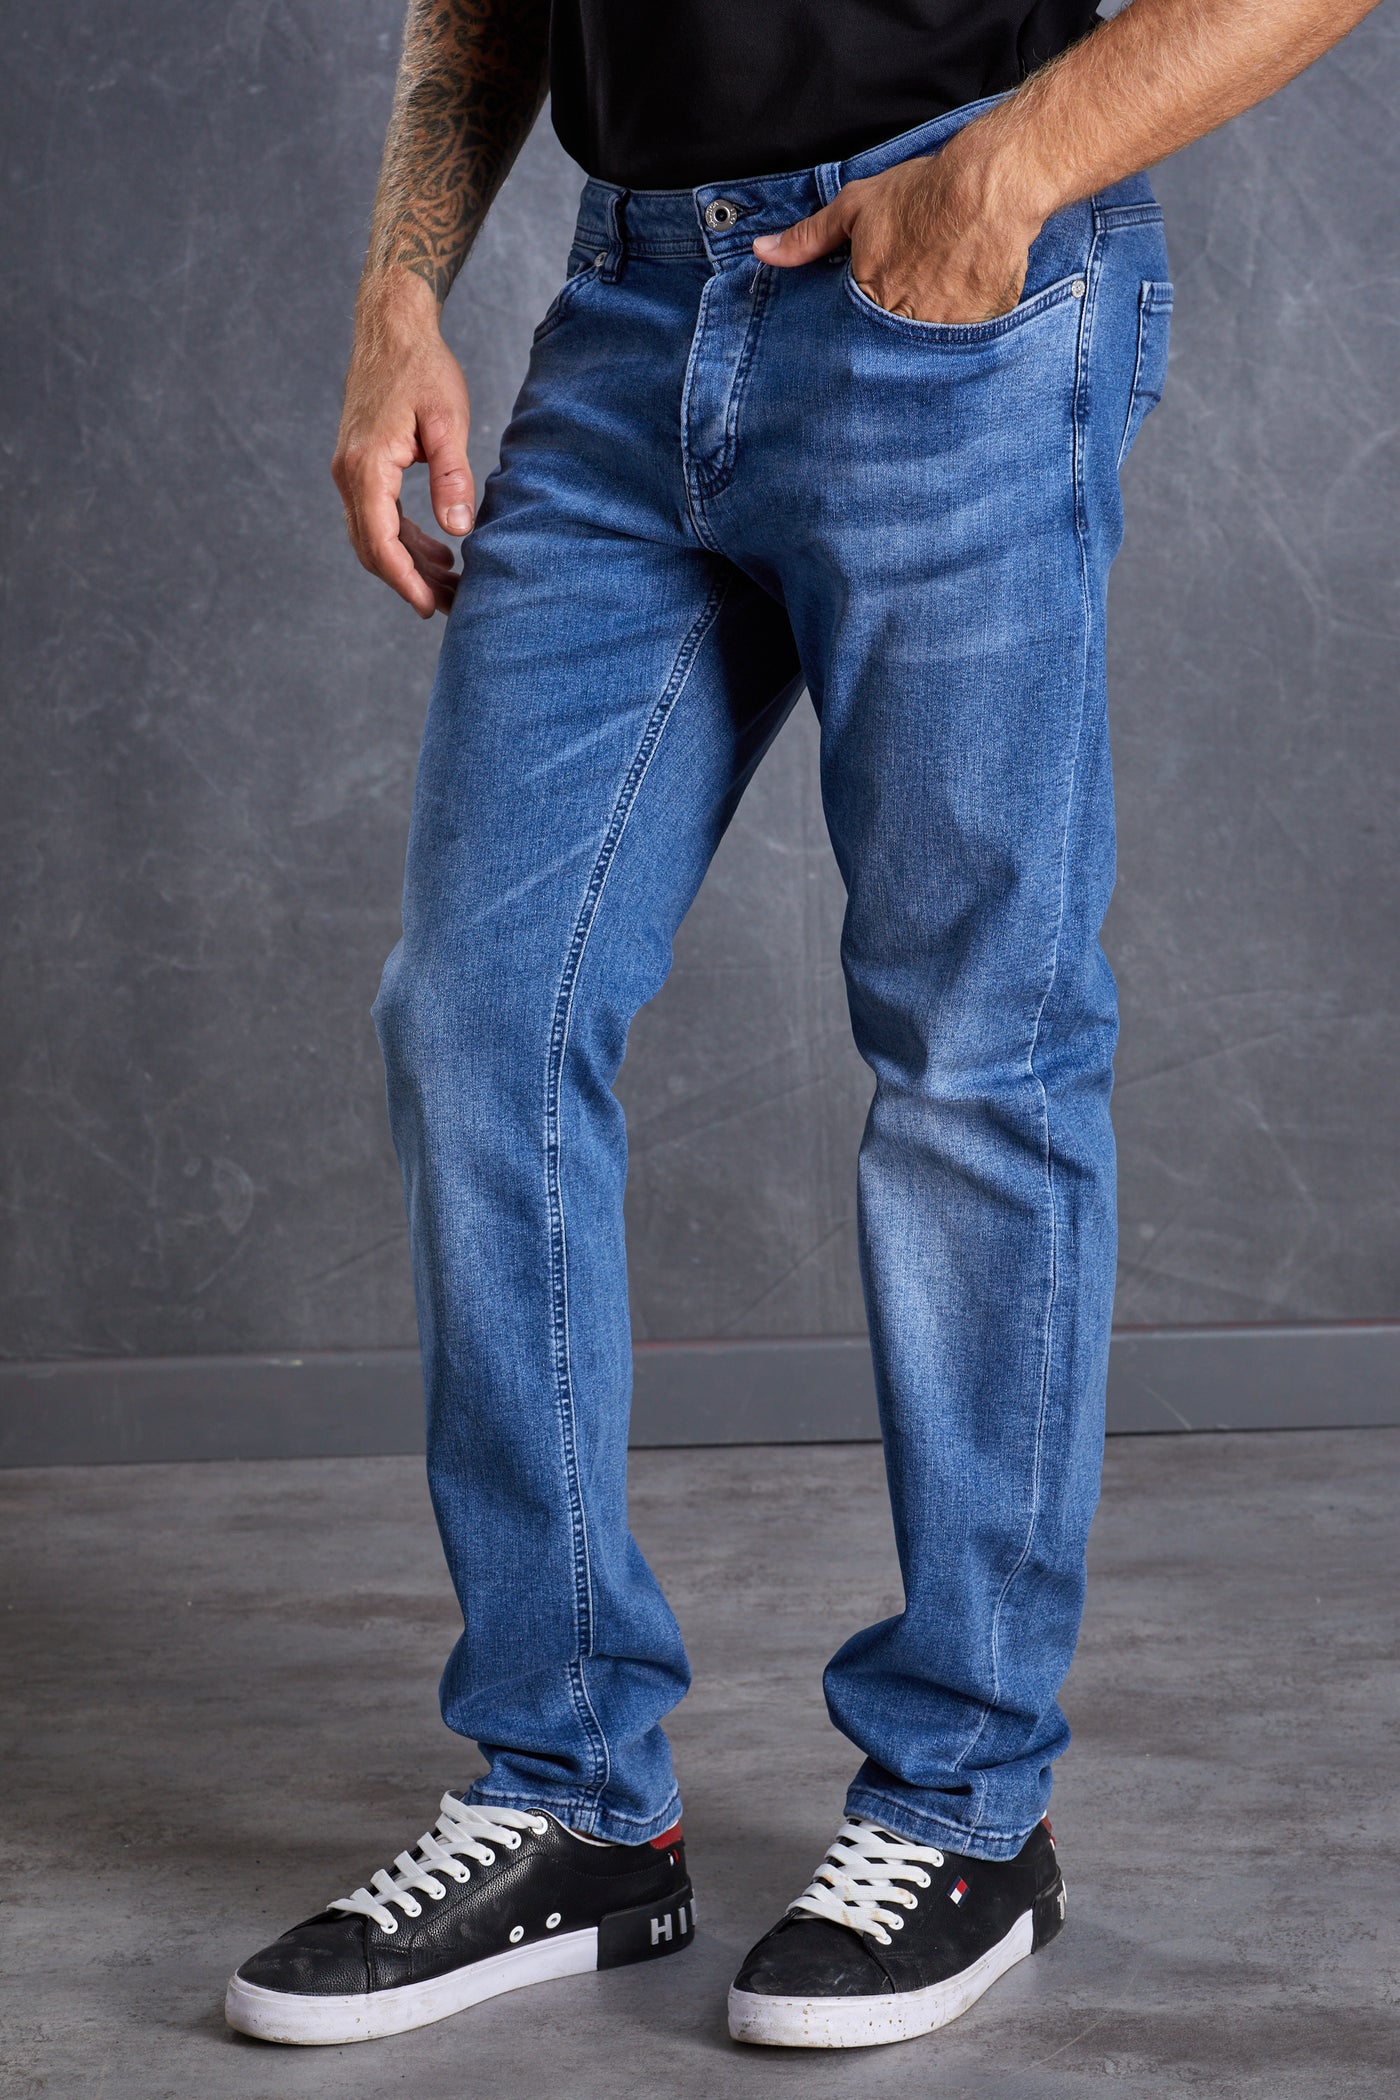 מכנס ג'ינס בצבע כחול בהיר